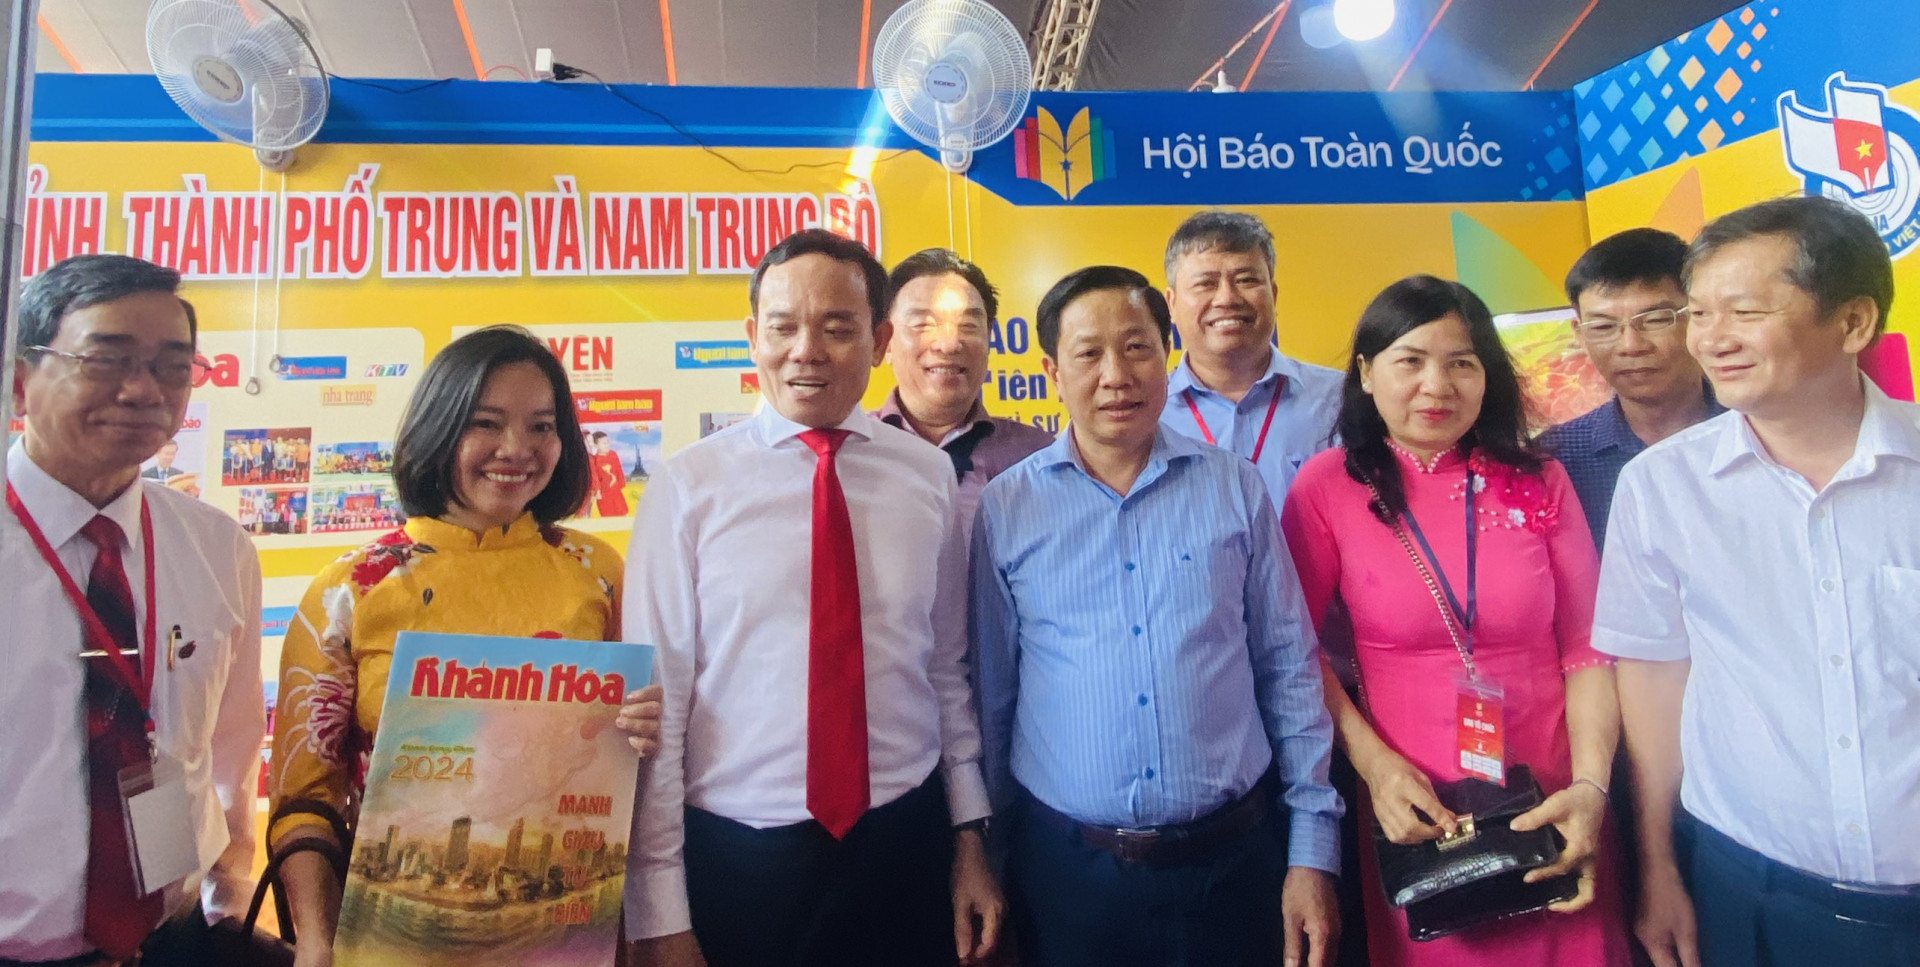 Phó Thủ tướng Chính phủ Trần Lưu Quang (thứ 3 từ trái qua) và Phó Bí thư Tỉnh ủy Khánh Hòa Hà Quốc Trị cùng các đại biểu tham quan gian hàng trưng bày báo chí của các tỉnh, thành phố Trung và Nam Trung bộ.